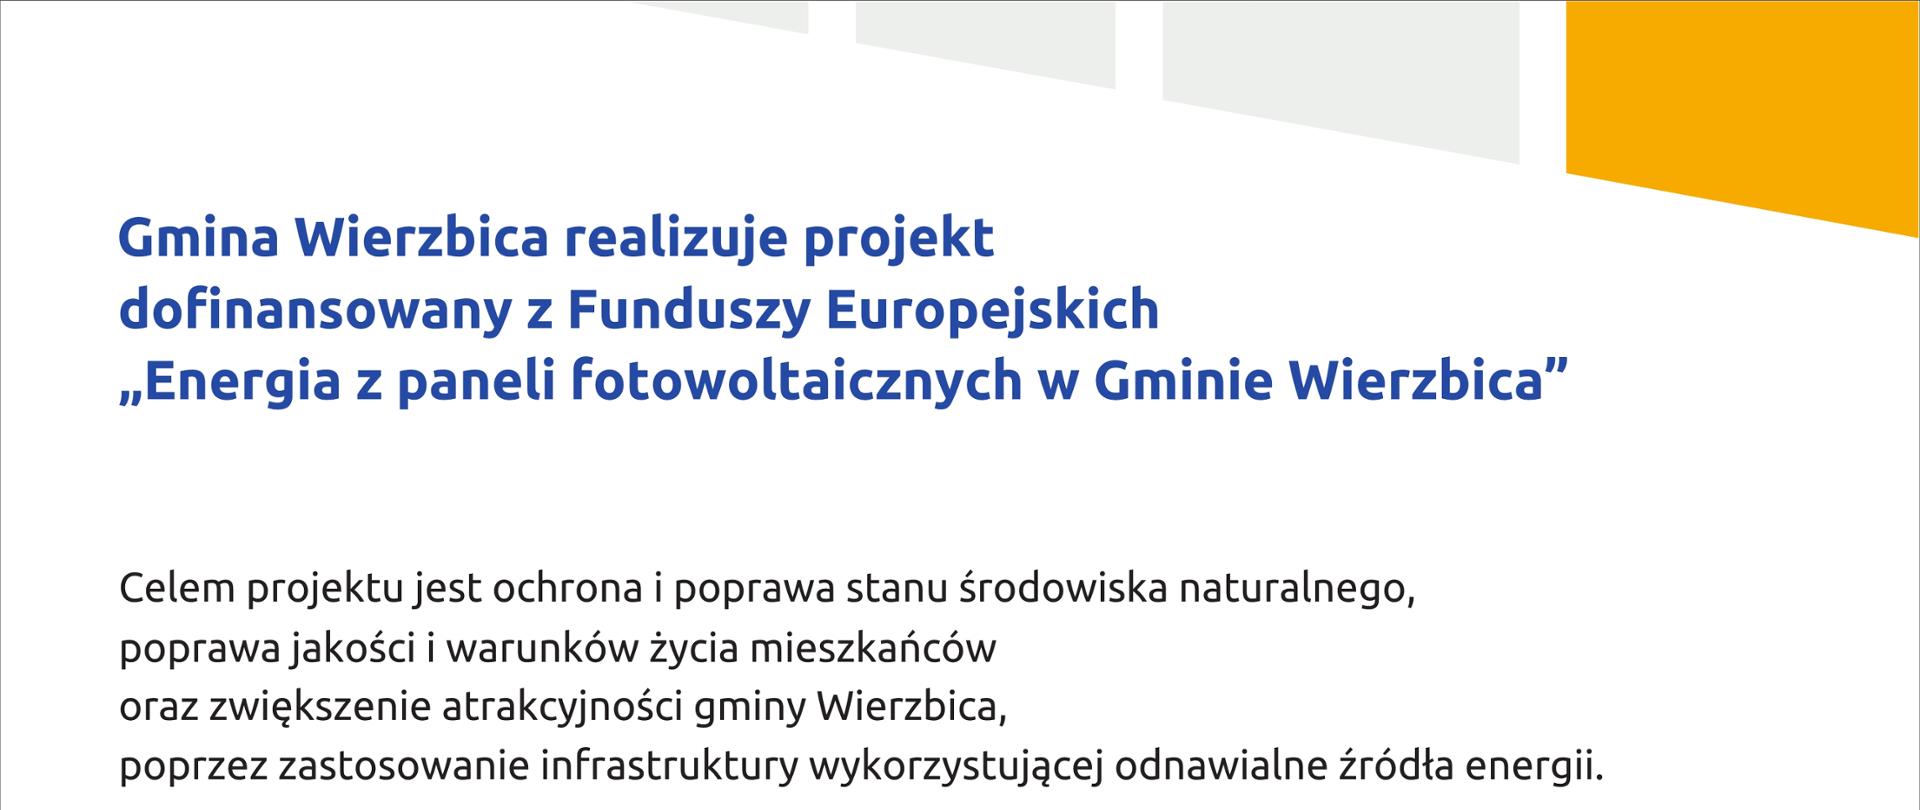 Plakat informacyjny w ramach realizacji projektu: Energia z paneli fotowoltaicznych w Gminie Wierzbica